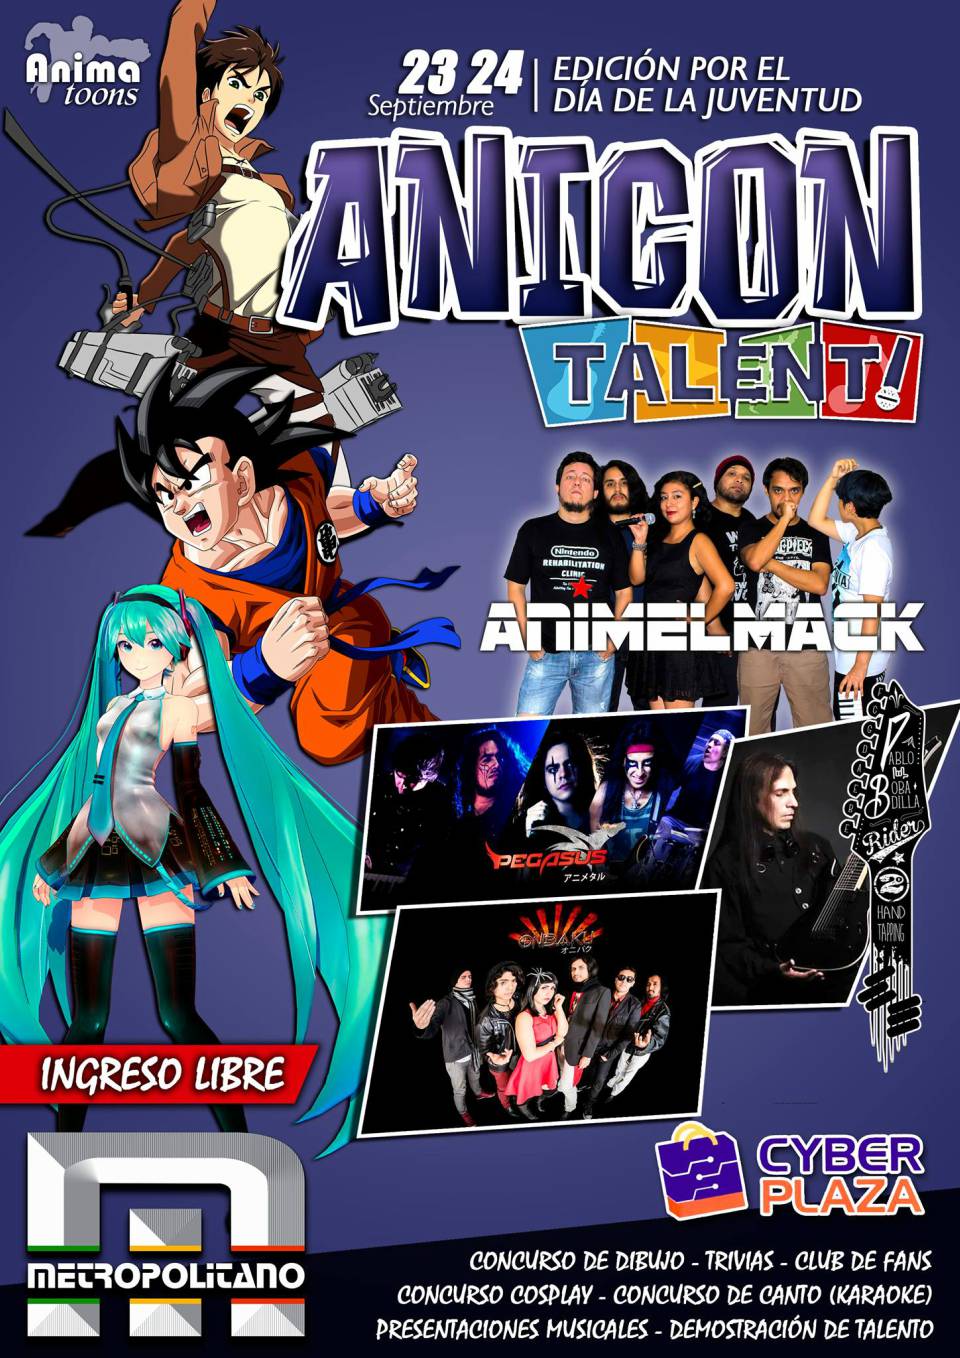 Instituto Metropolitano presenta la Anicon Talent 2017